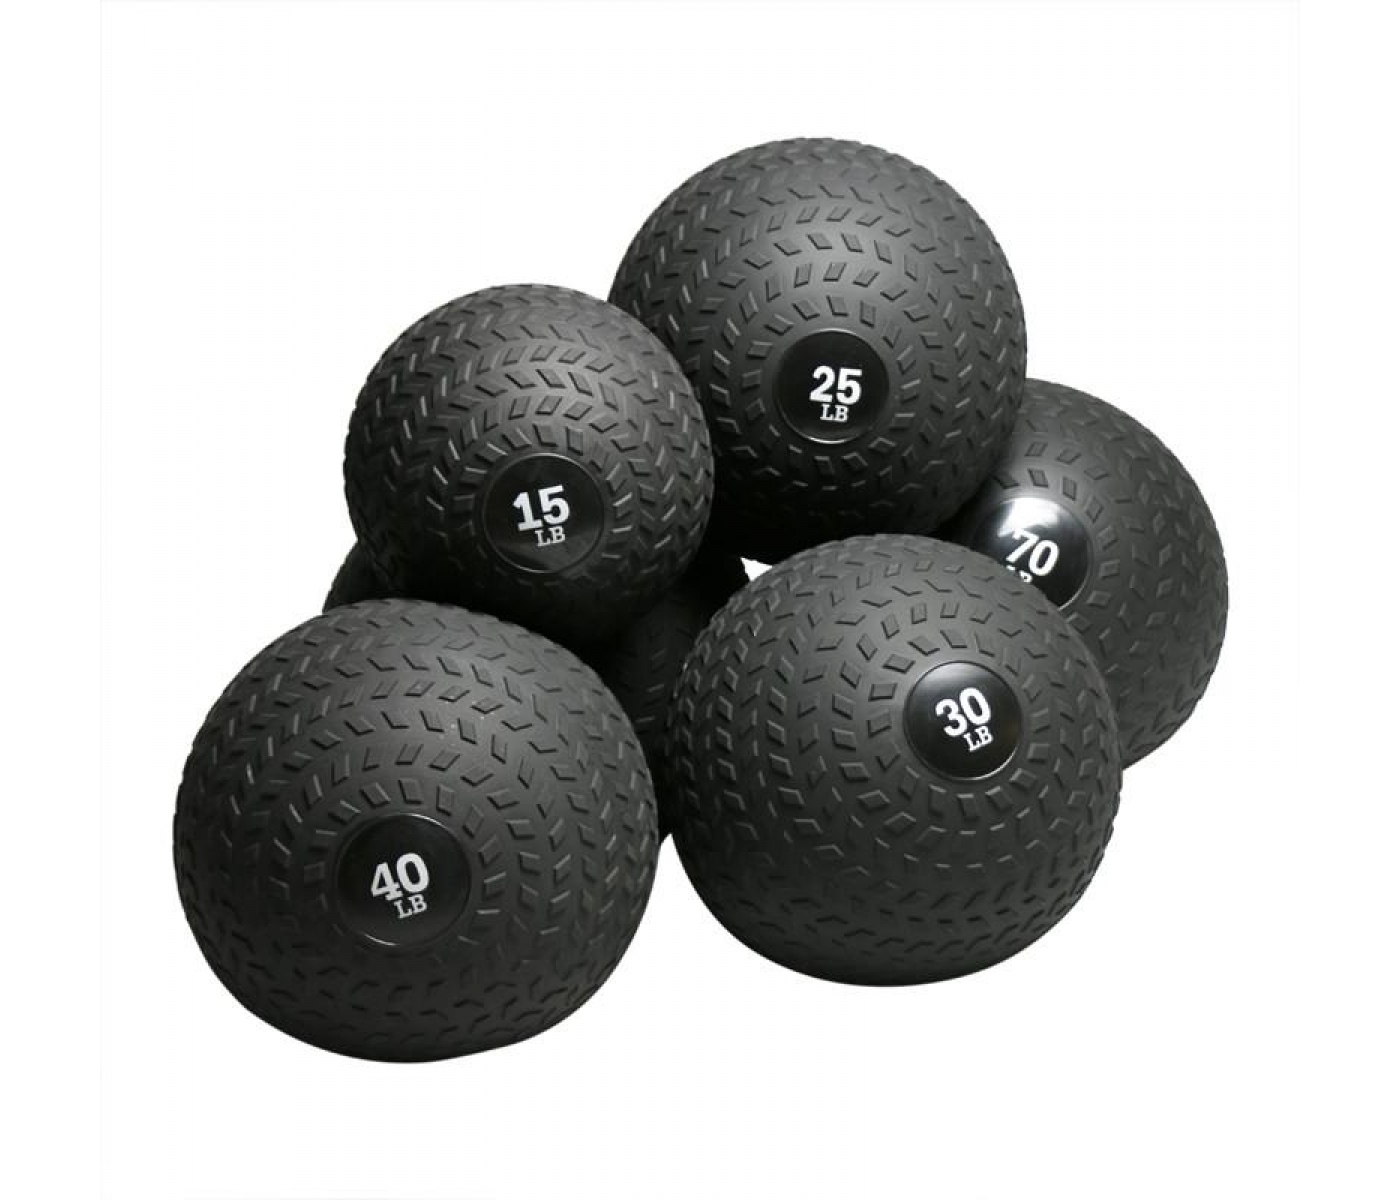 Brug American Barbell Slam Ball 120 LBS (54,4 kg) til en forbedret oplevelse